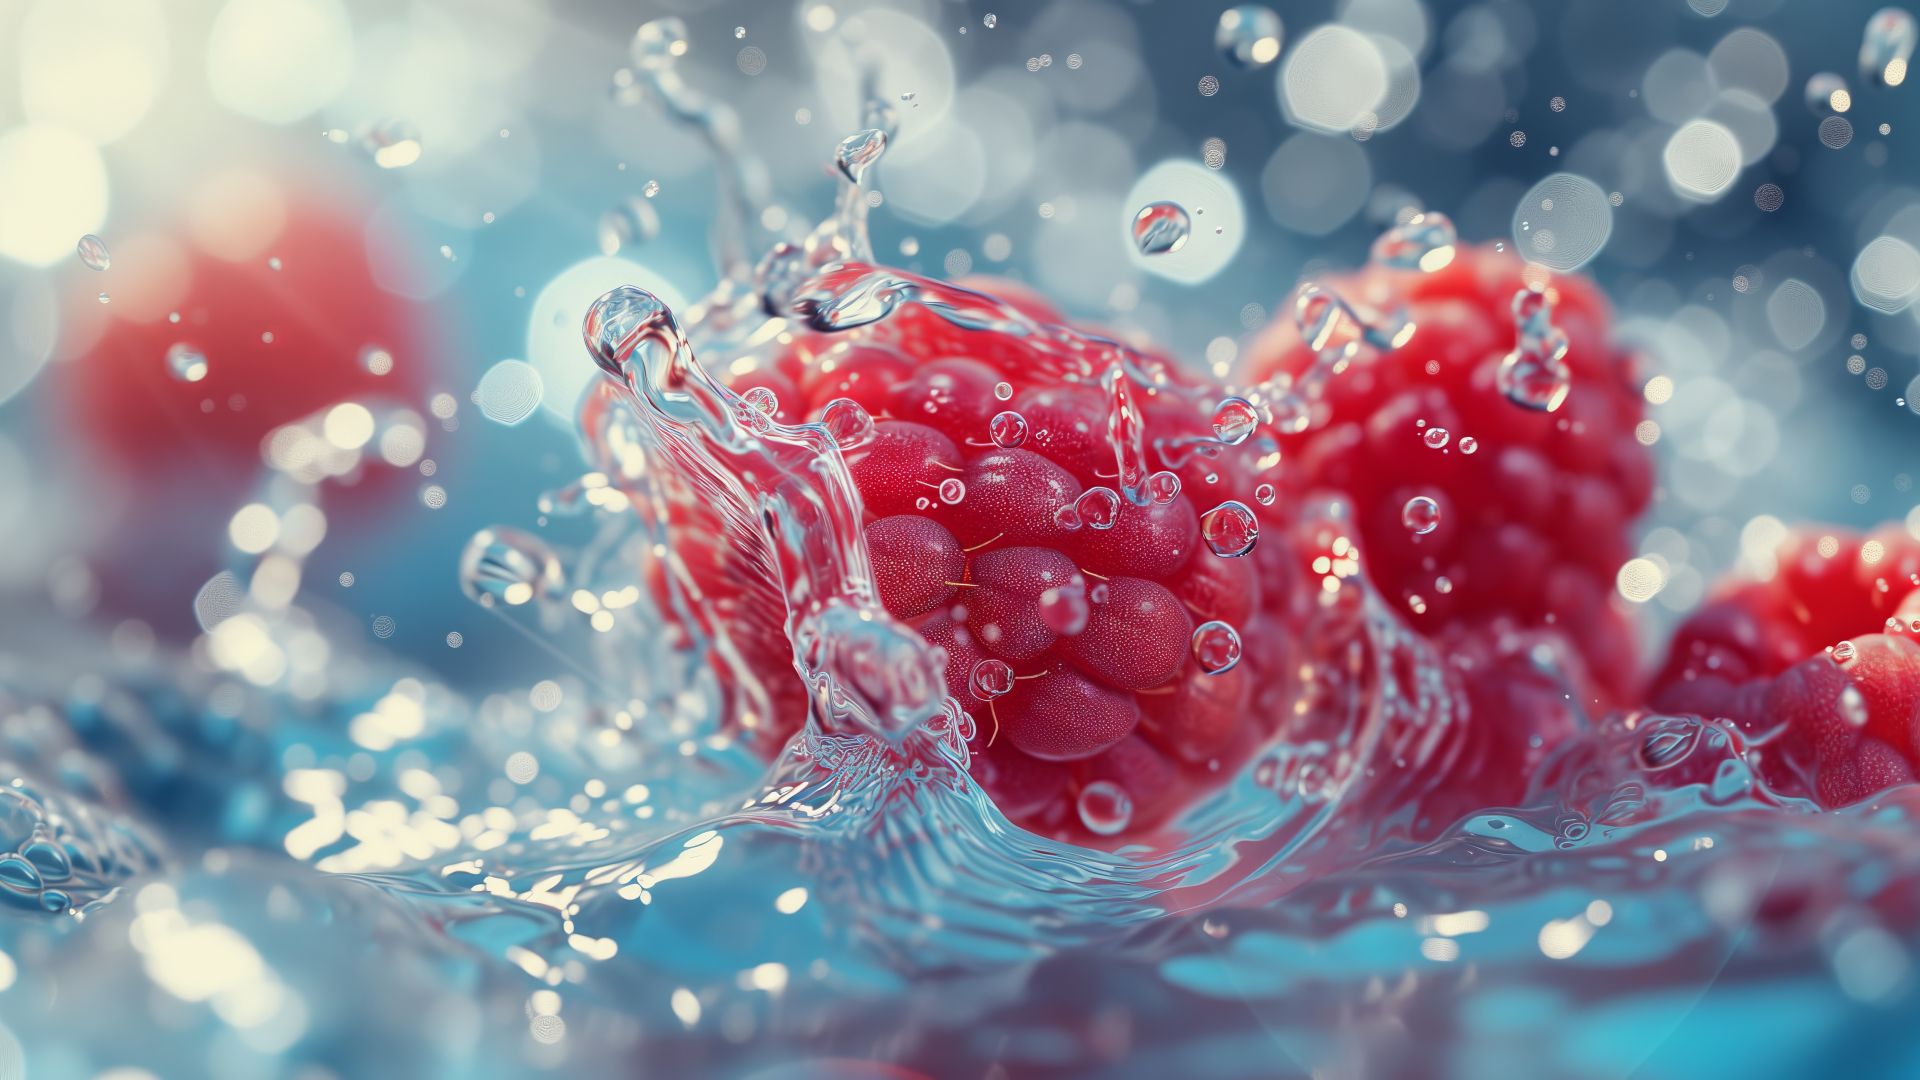 Raspberry, water, red (horizontal)